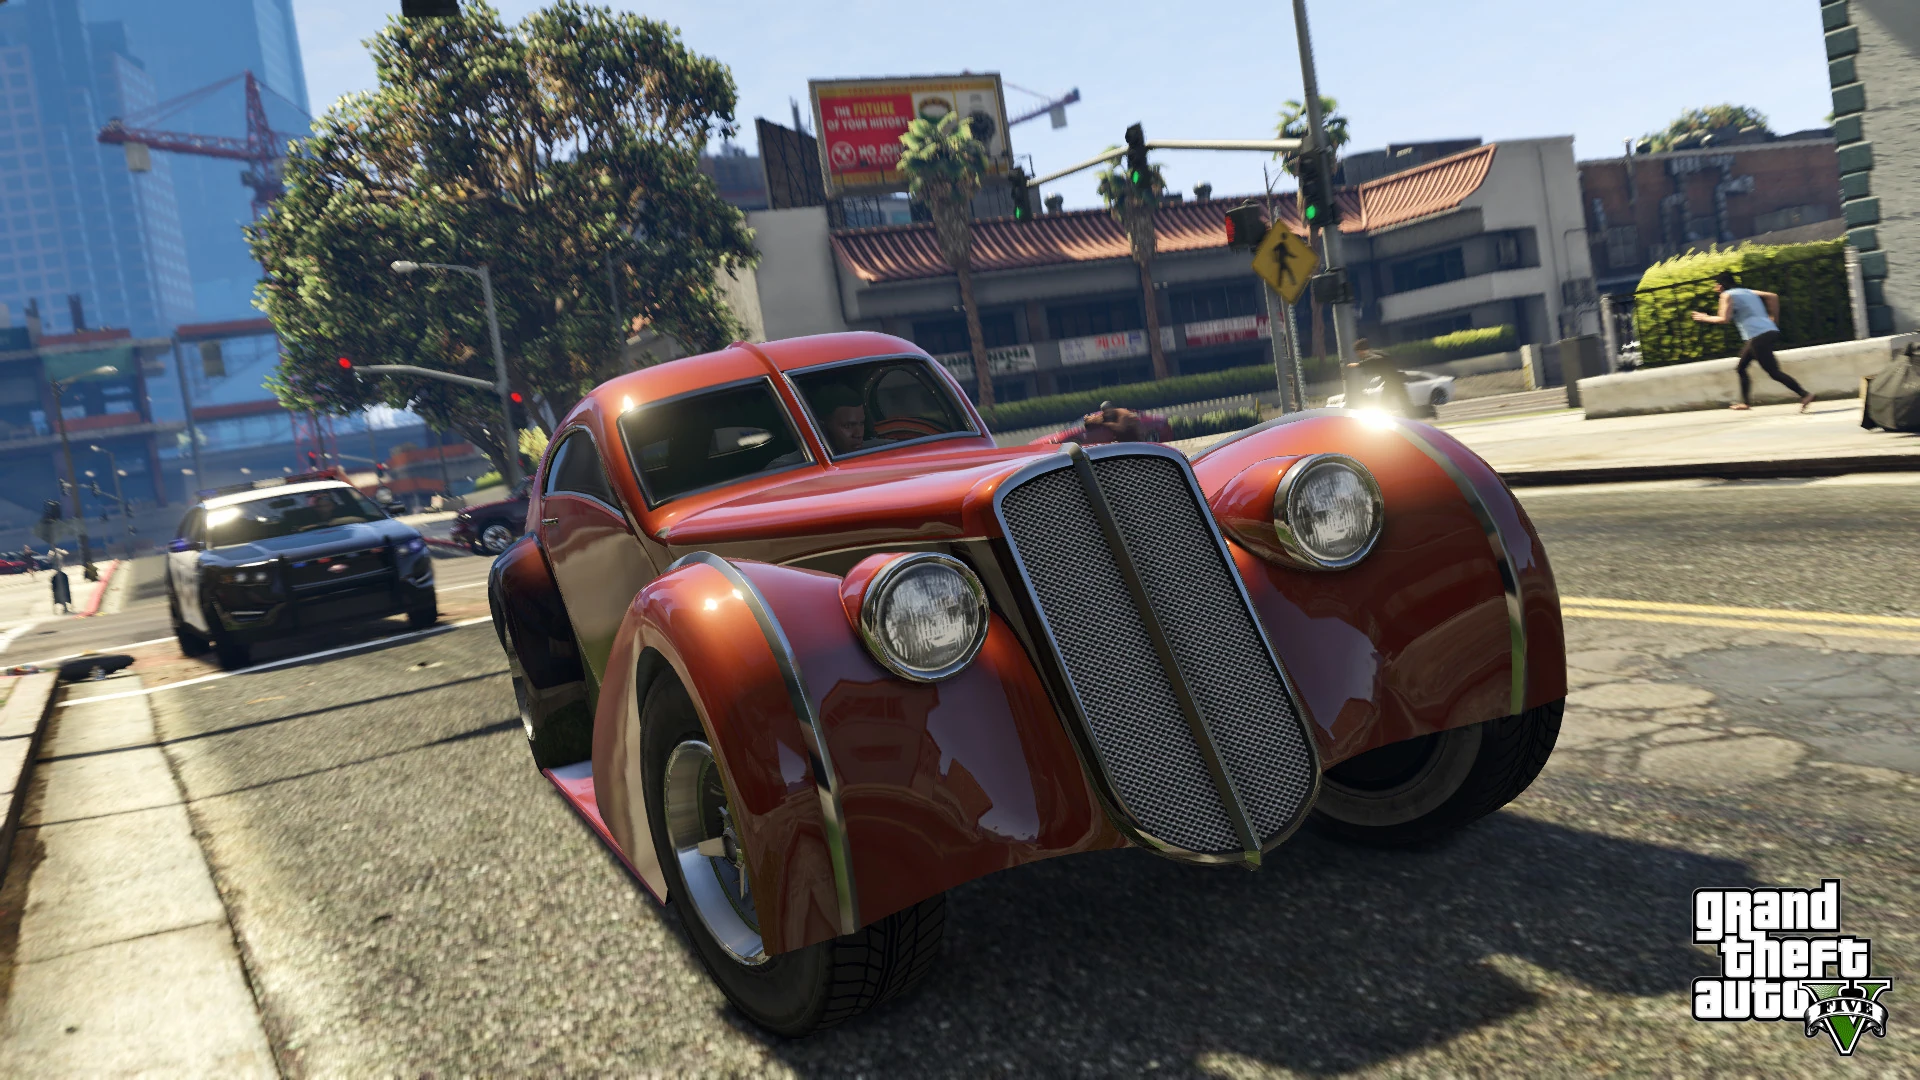 Grand Theft Auto V - PS4 Screenshot 04 - Carros